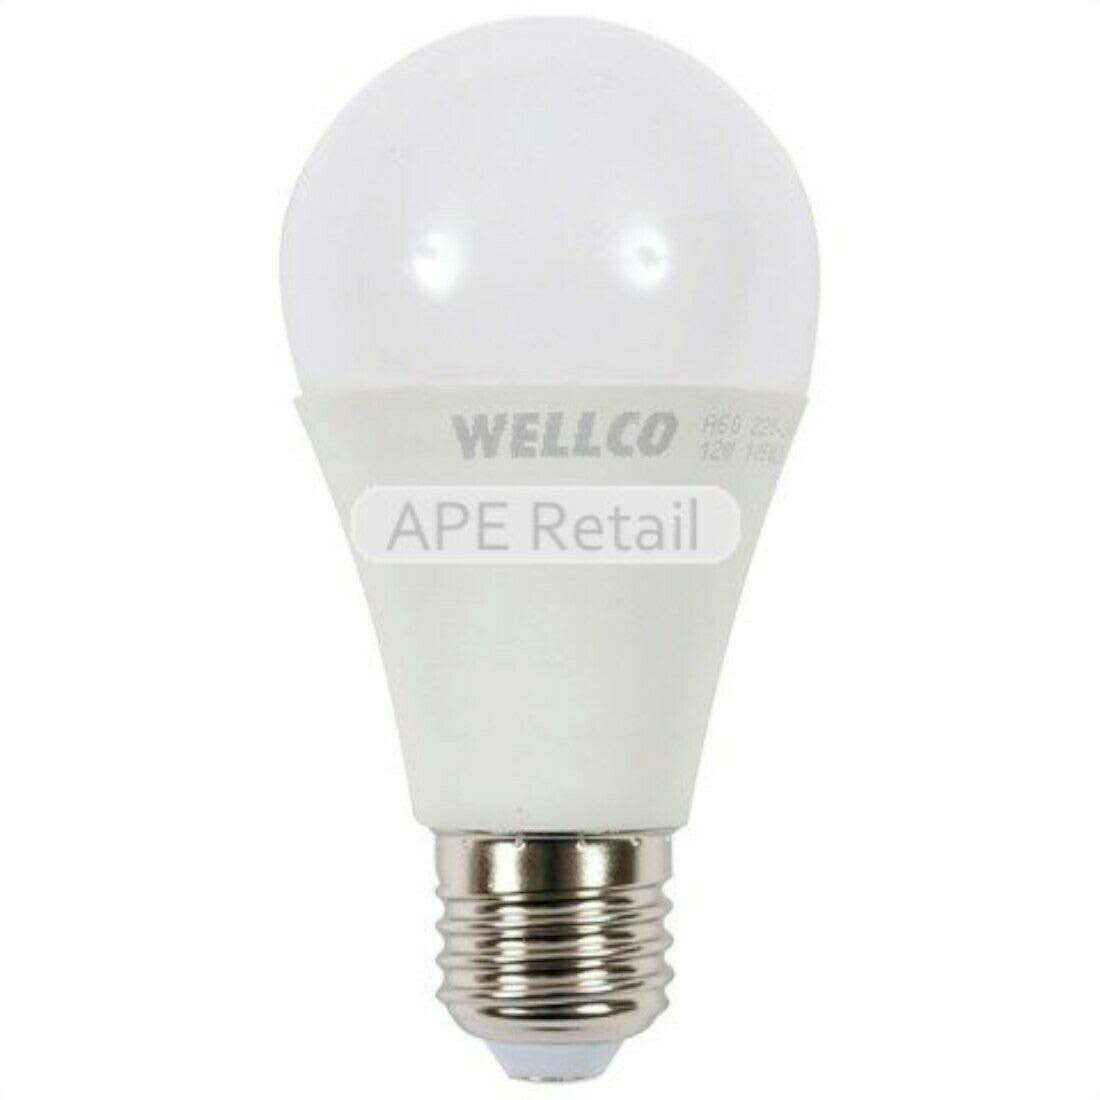 Wellco 12W E27 GLS LED Bulb – Warm White